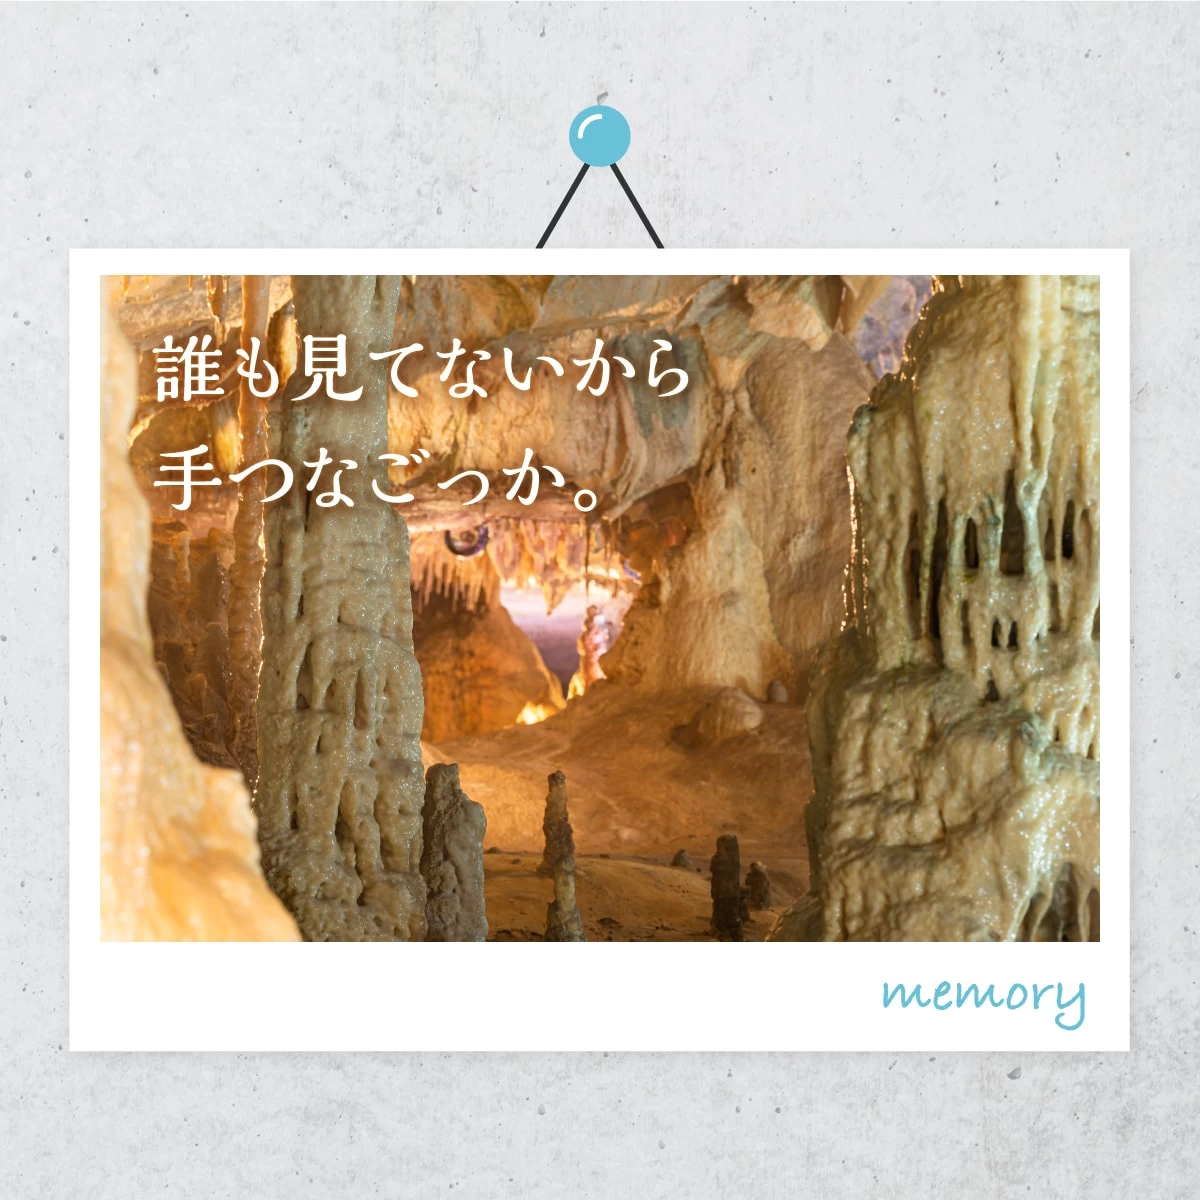 福島・あぶくま洞を観光  日帰りで温泉デート旅